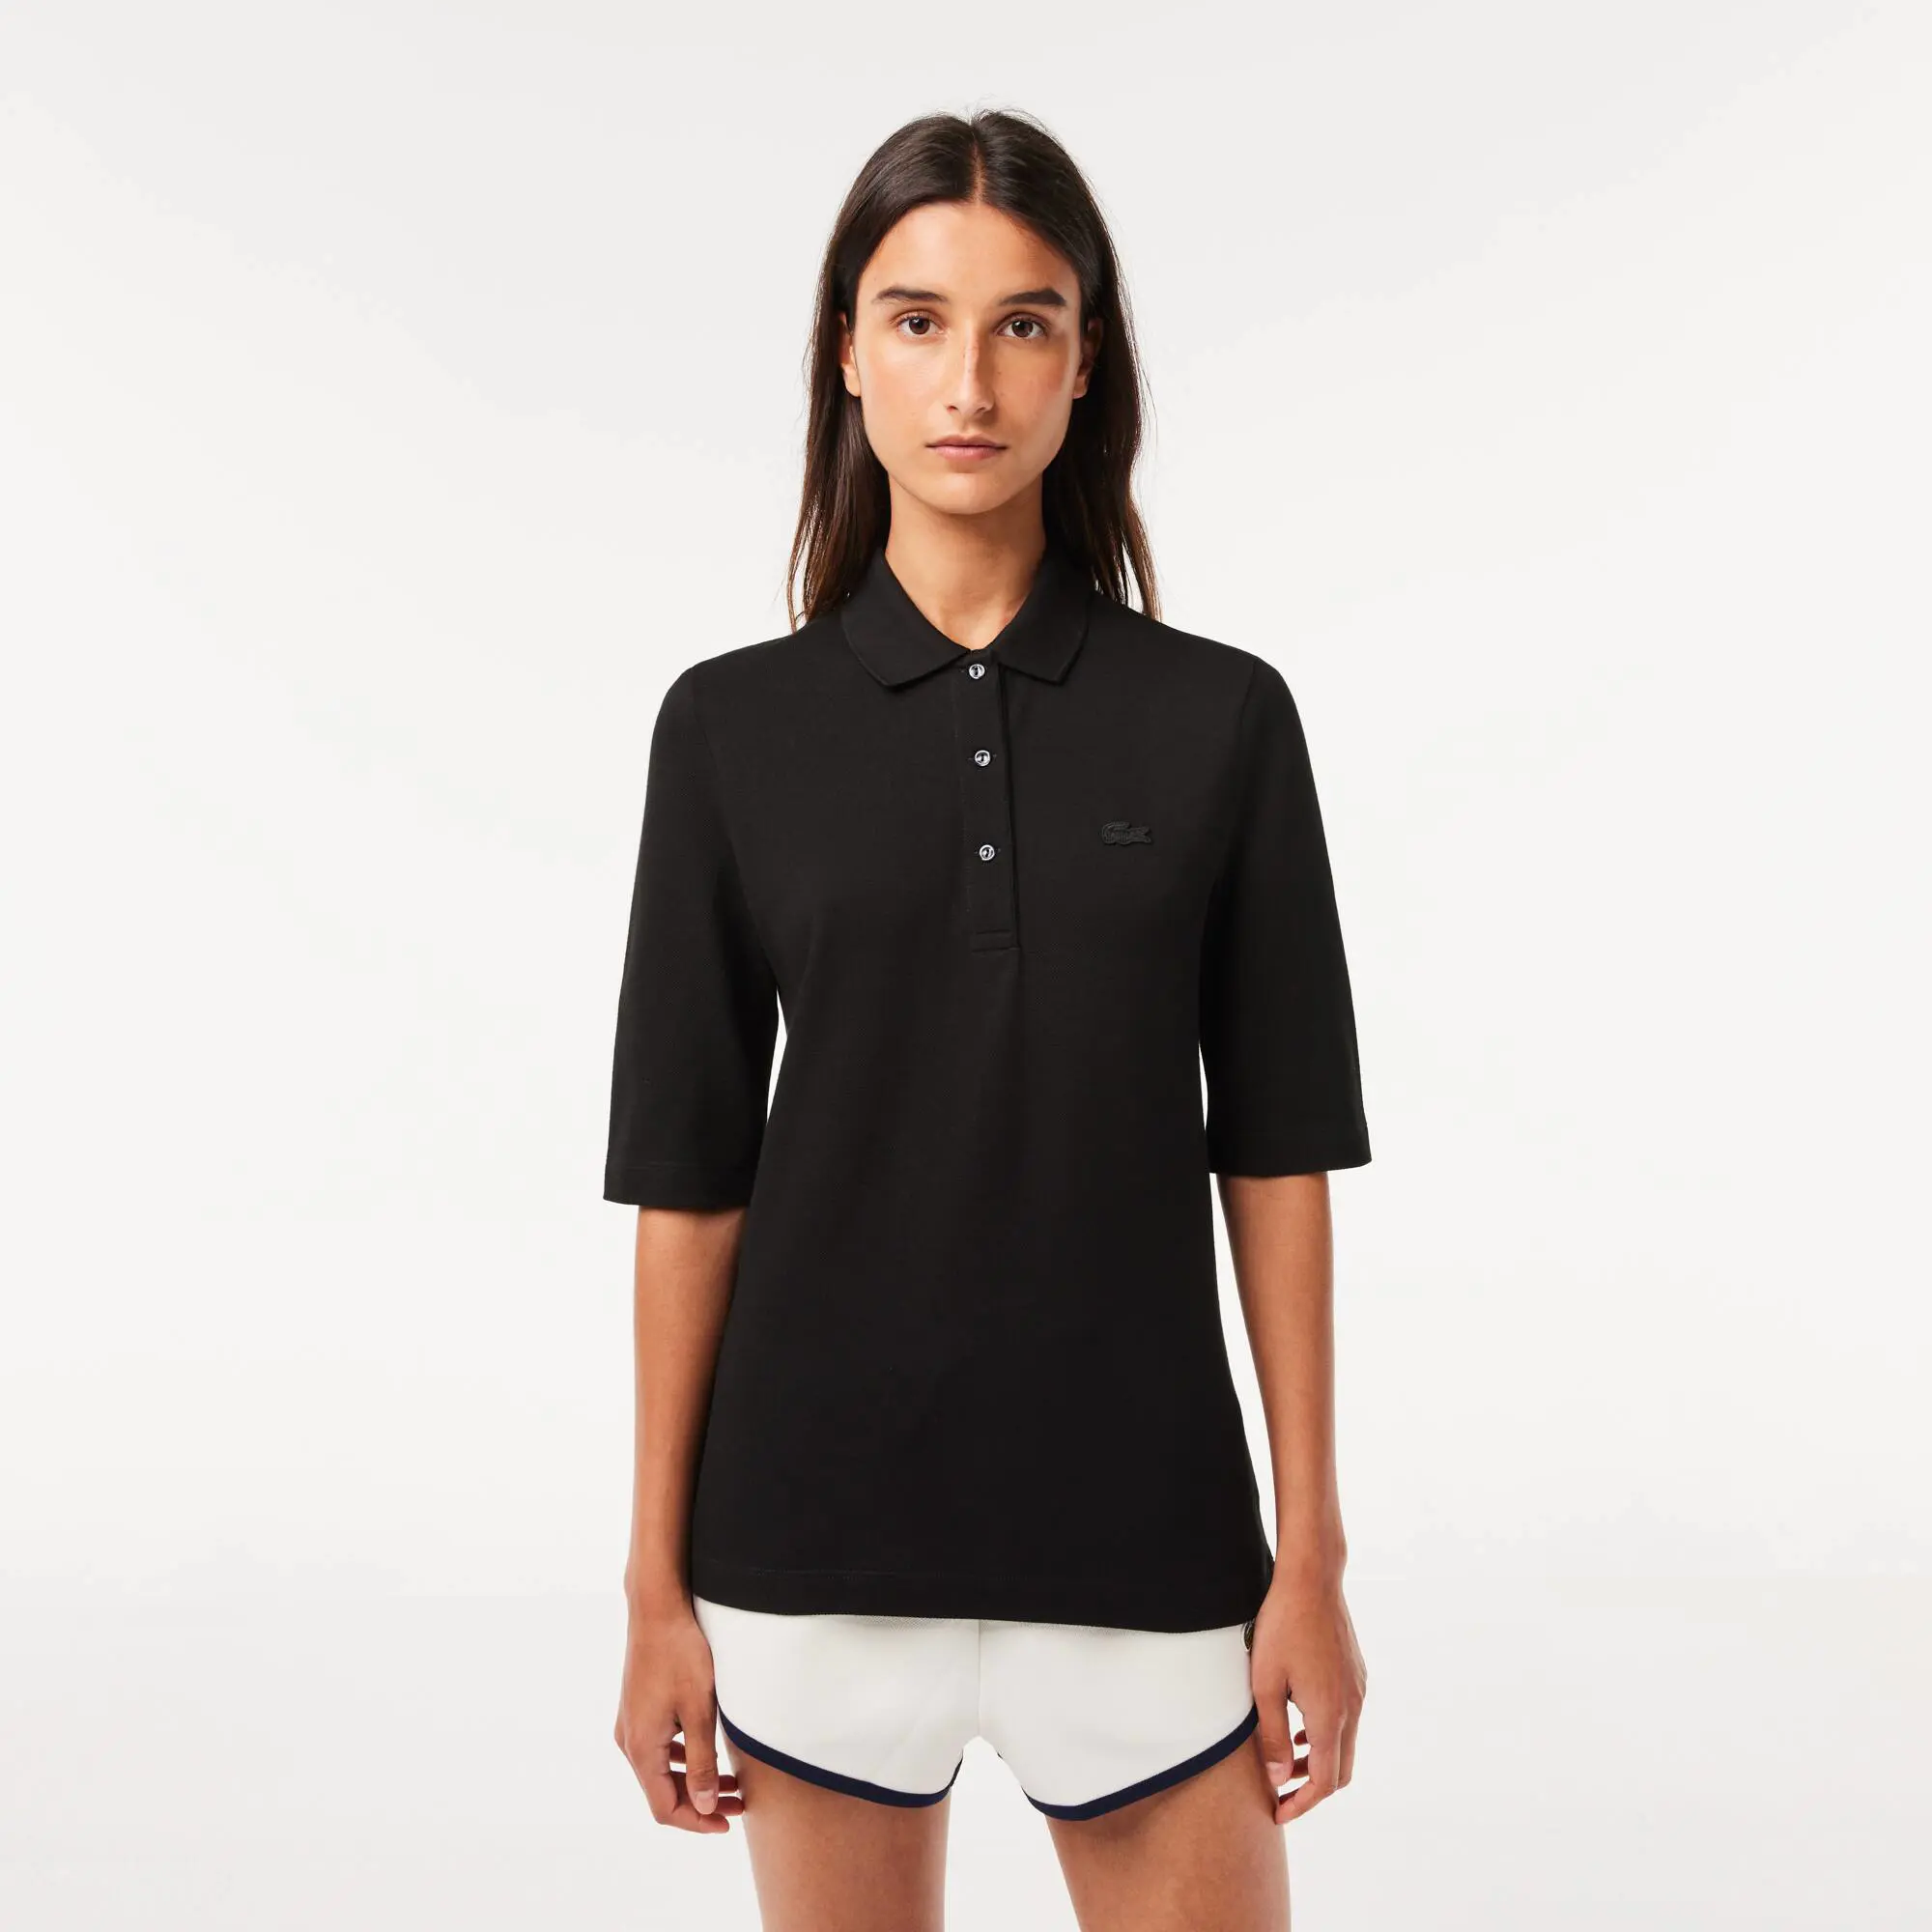 Lacoste Women's Lacoste Slim Fit Supple Cotton Polo Shirt. 1